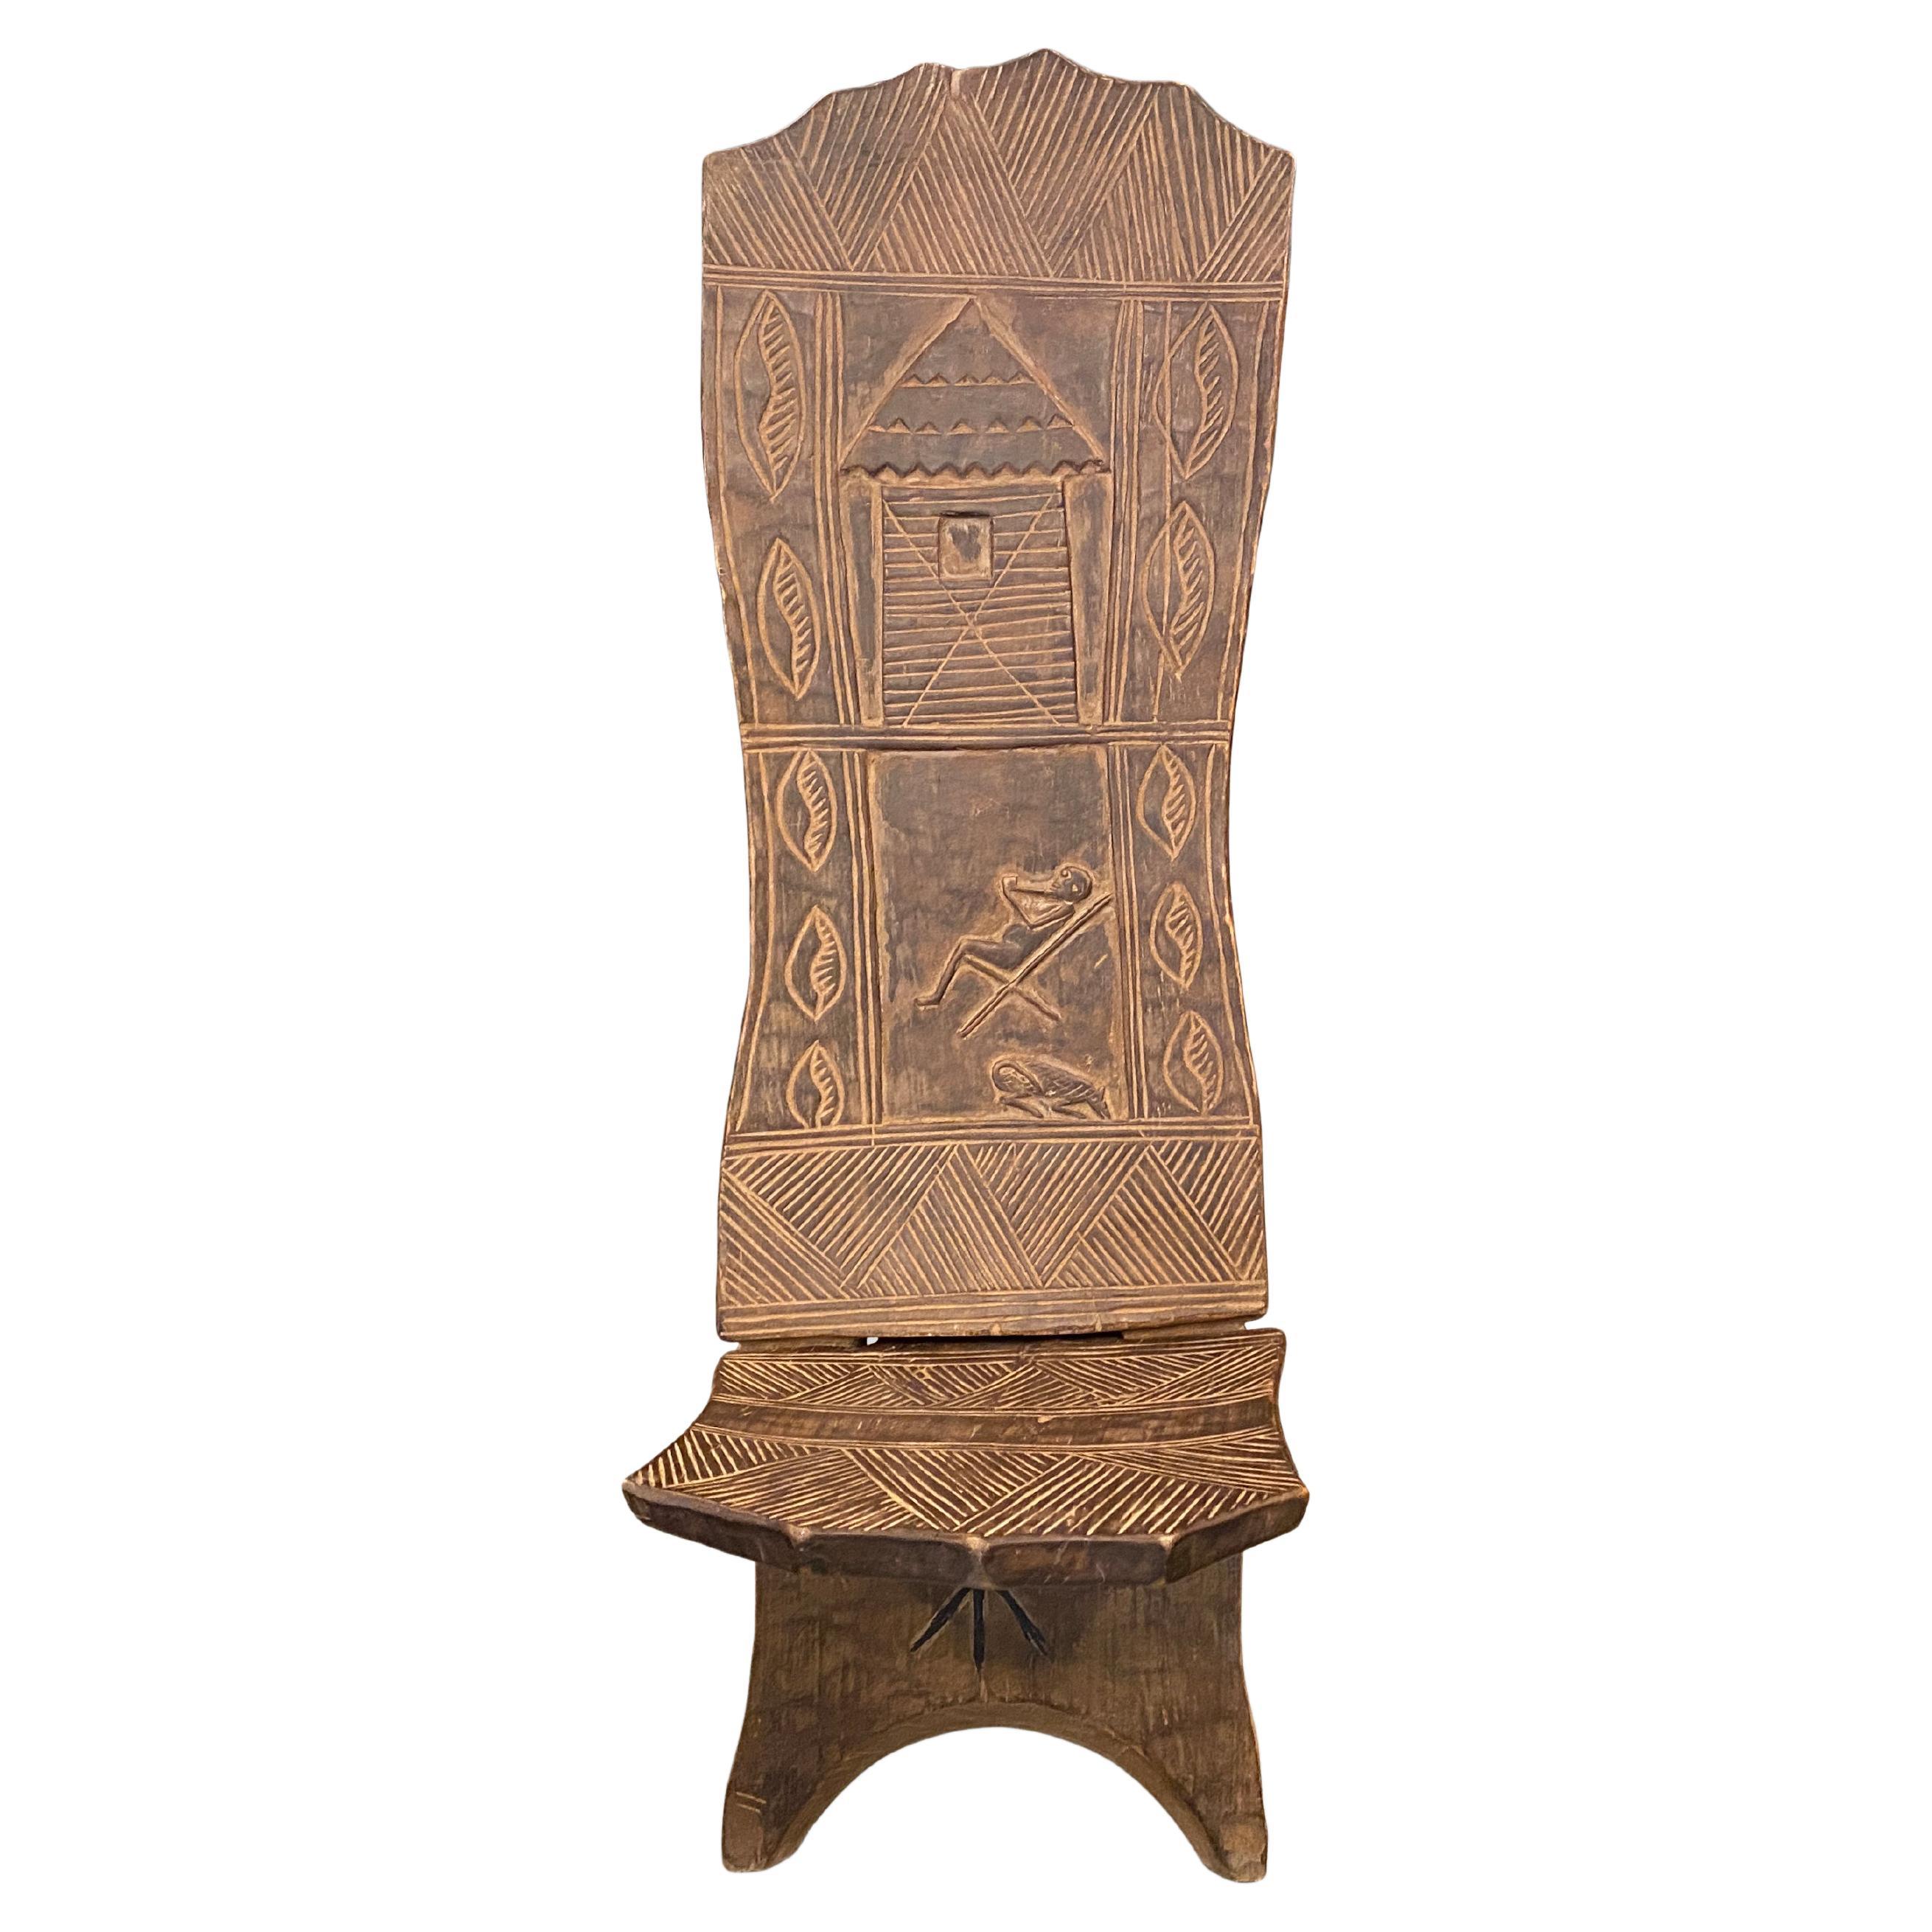 Andrianna Shamaris Rare Antique African Palaver Chair